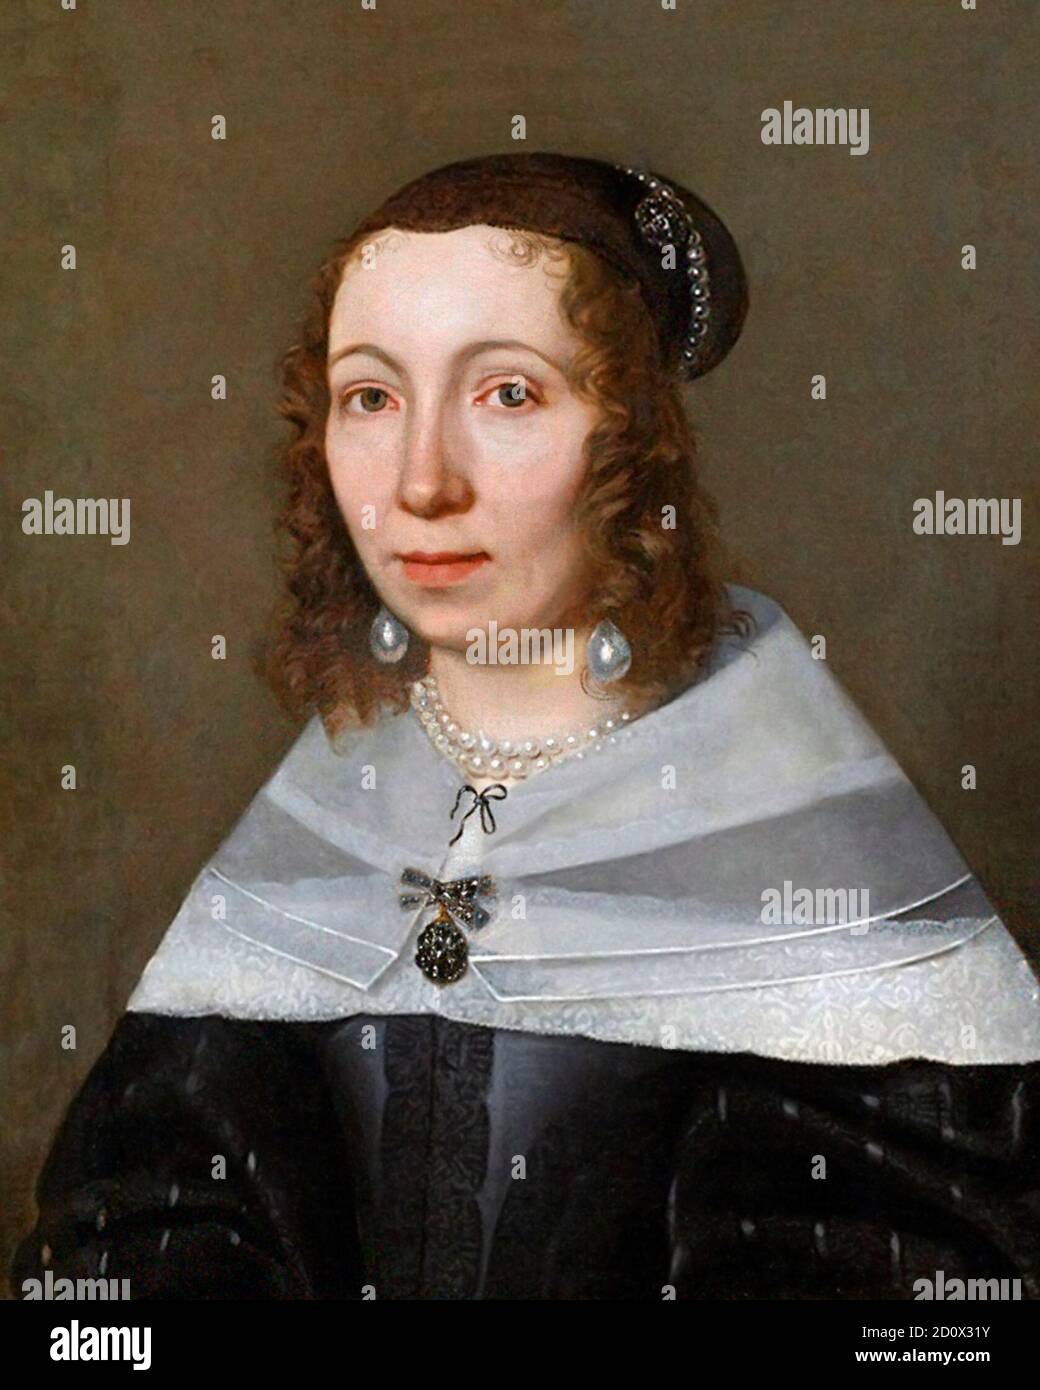 Maria Sibylla Merian. Porträt der in Deutschland geborenen Naturforscherin Maria Sibylla Merian (1647-1717) von Jacob Marrel, 1679 Stockfoto